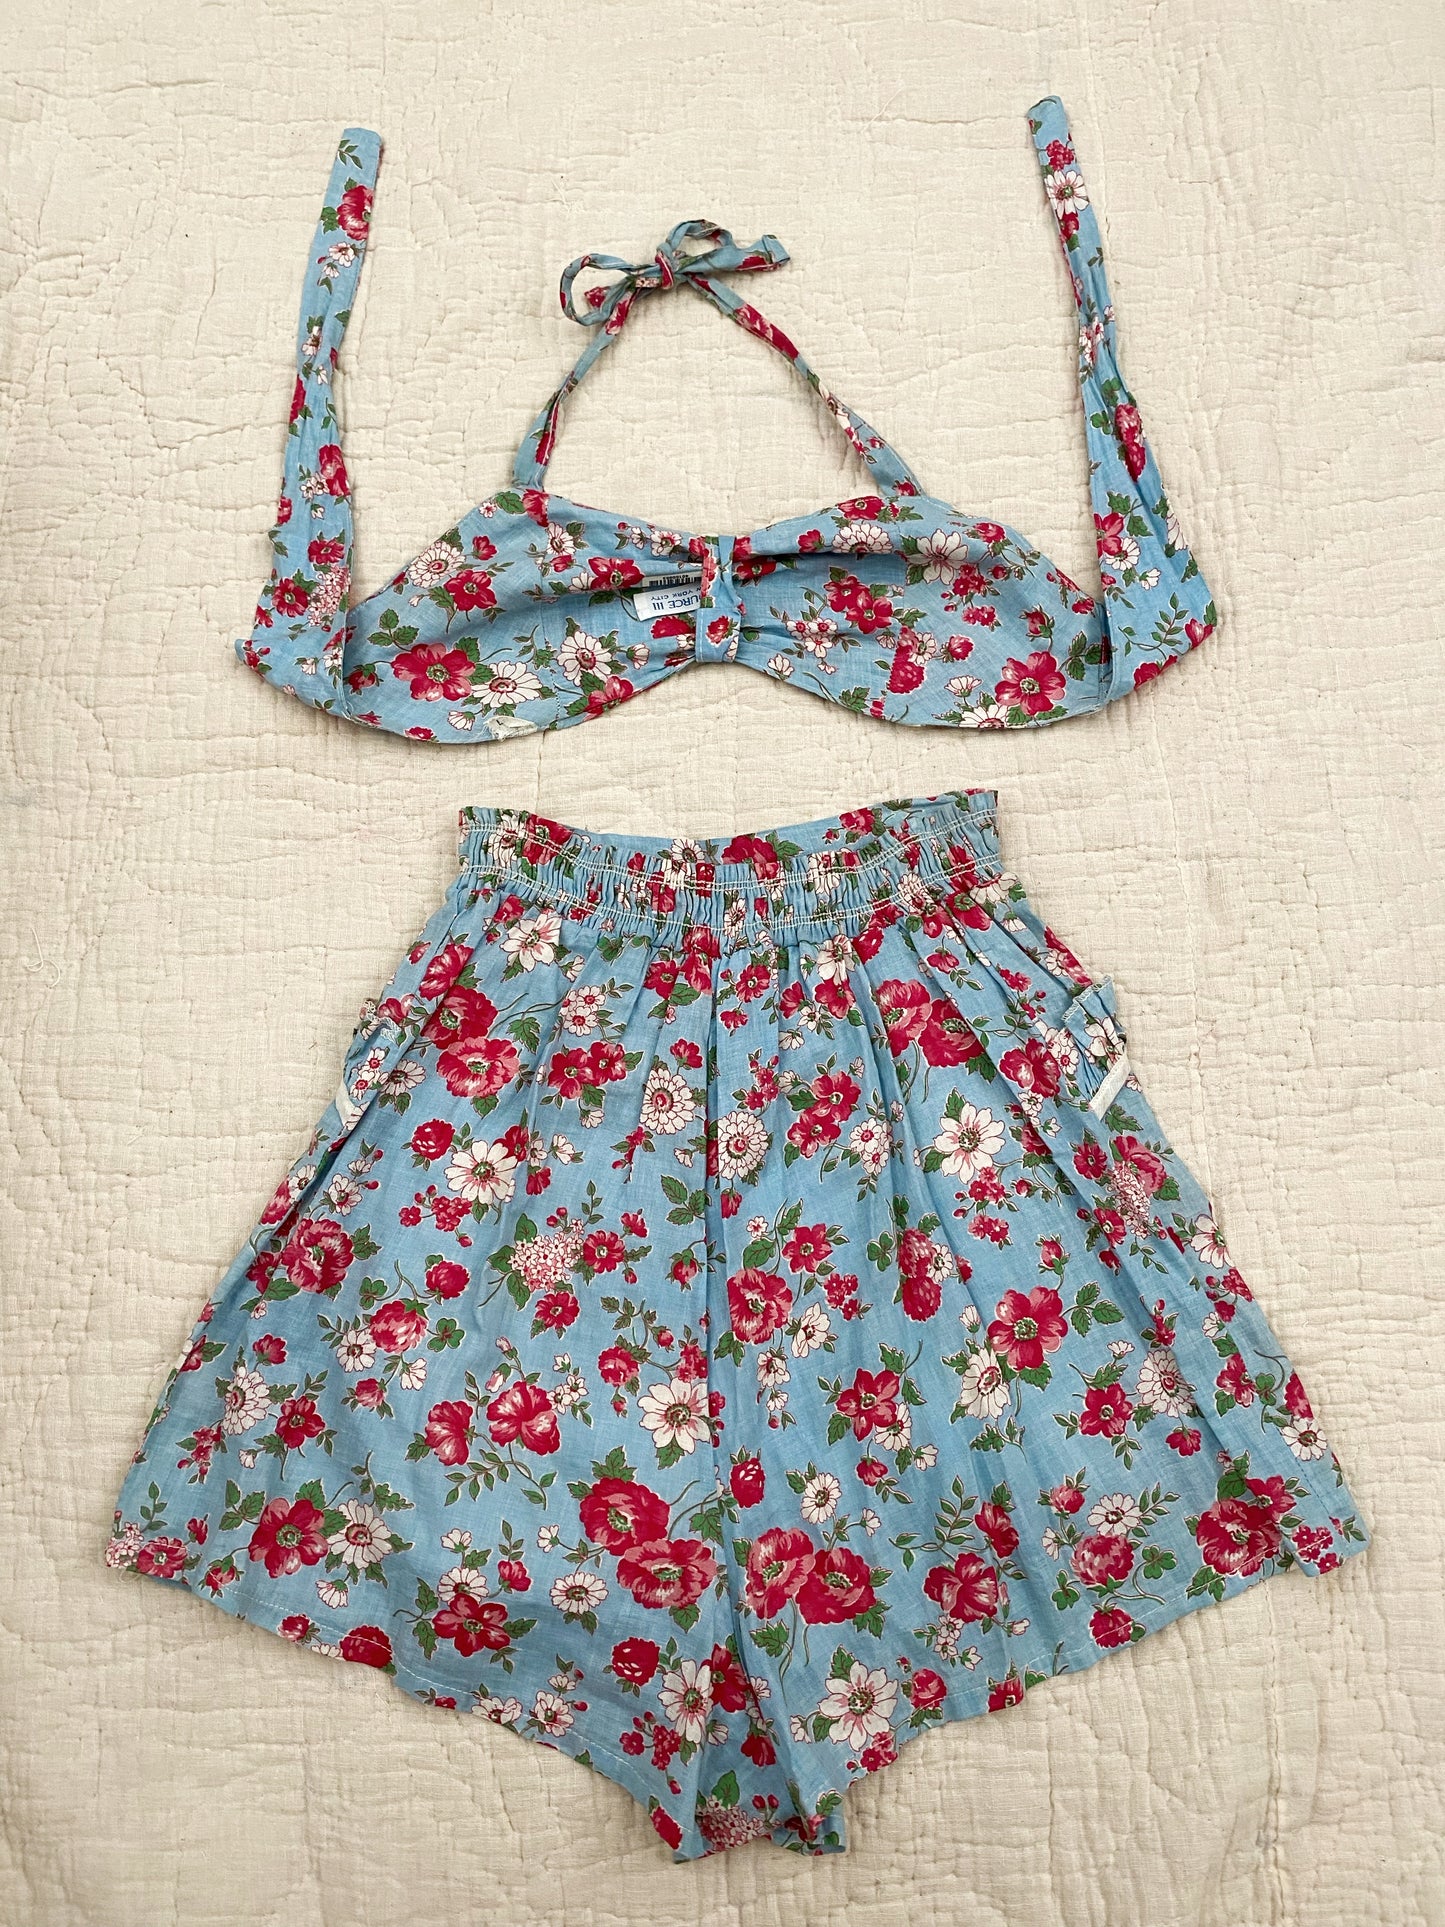 1940s Pristine Ditzy Floral Cotton Playsuit- XS/S